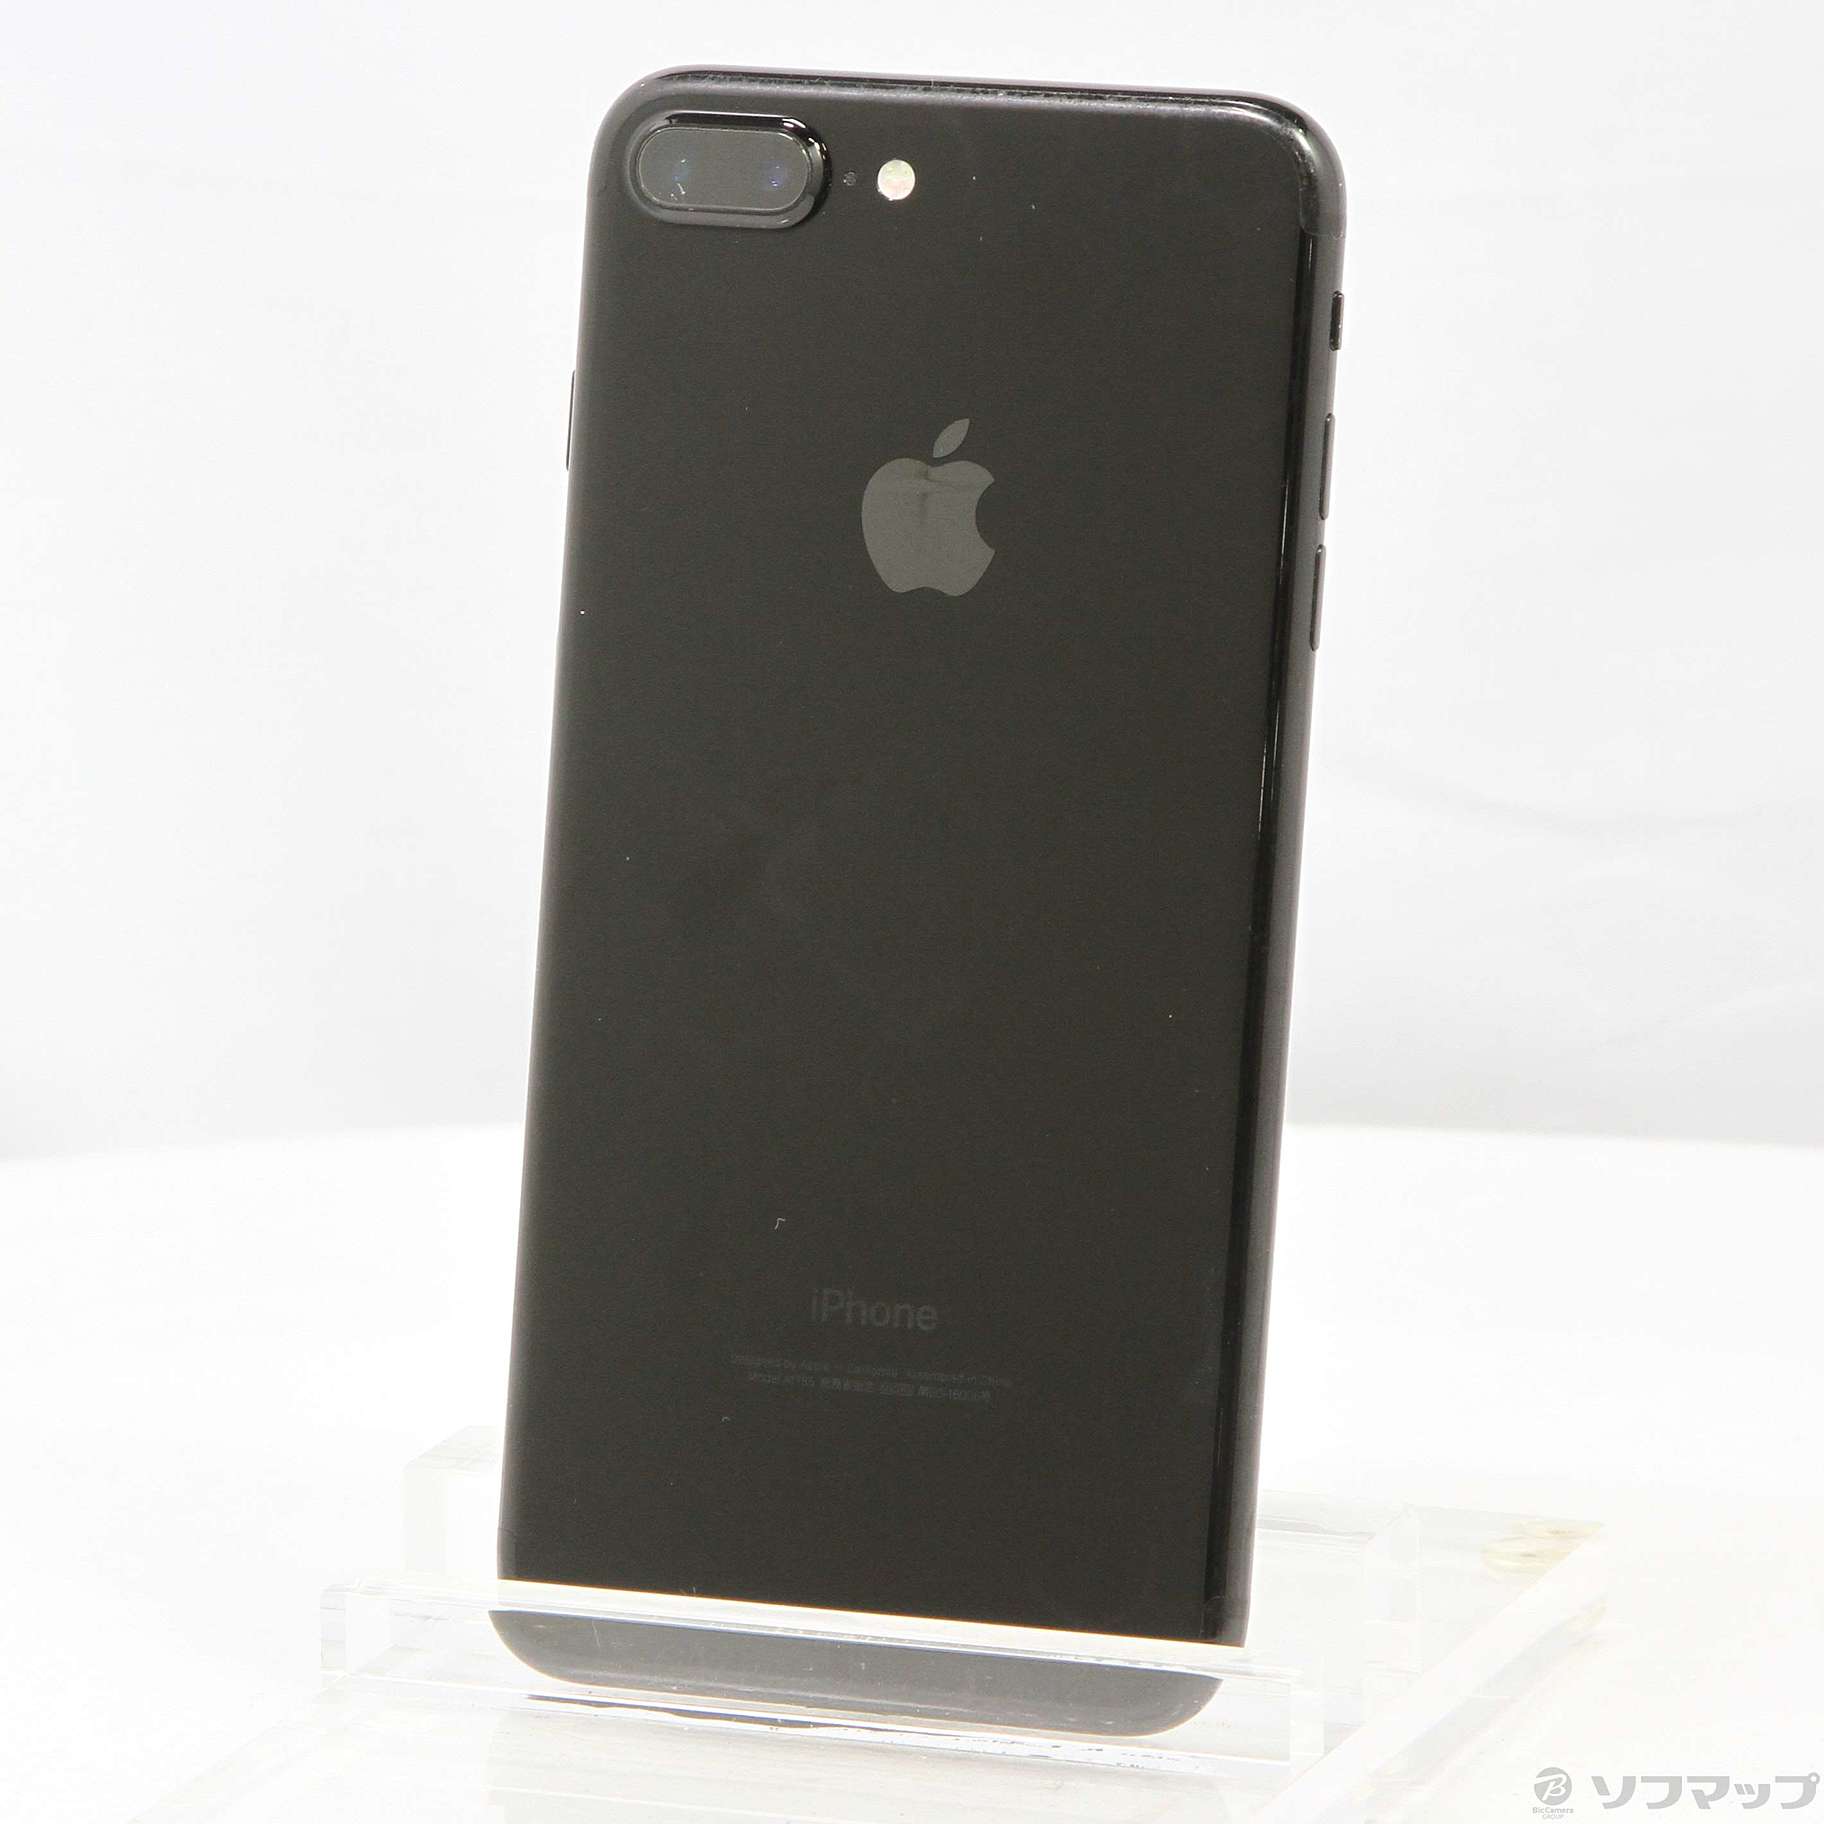 iPhone 7 ジェットブラック 128GB ジャンク品 - スマートフォン本体